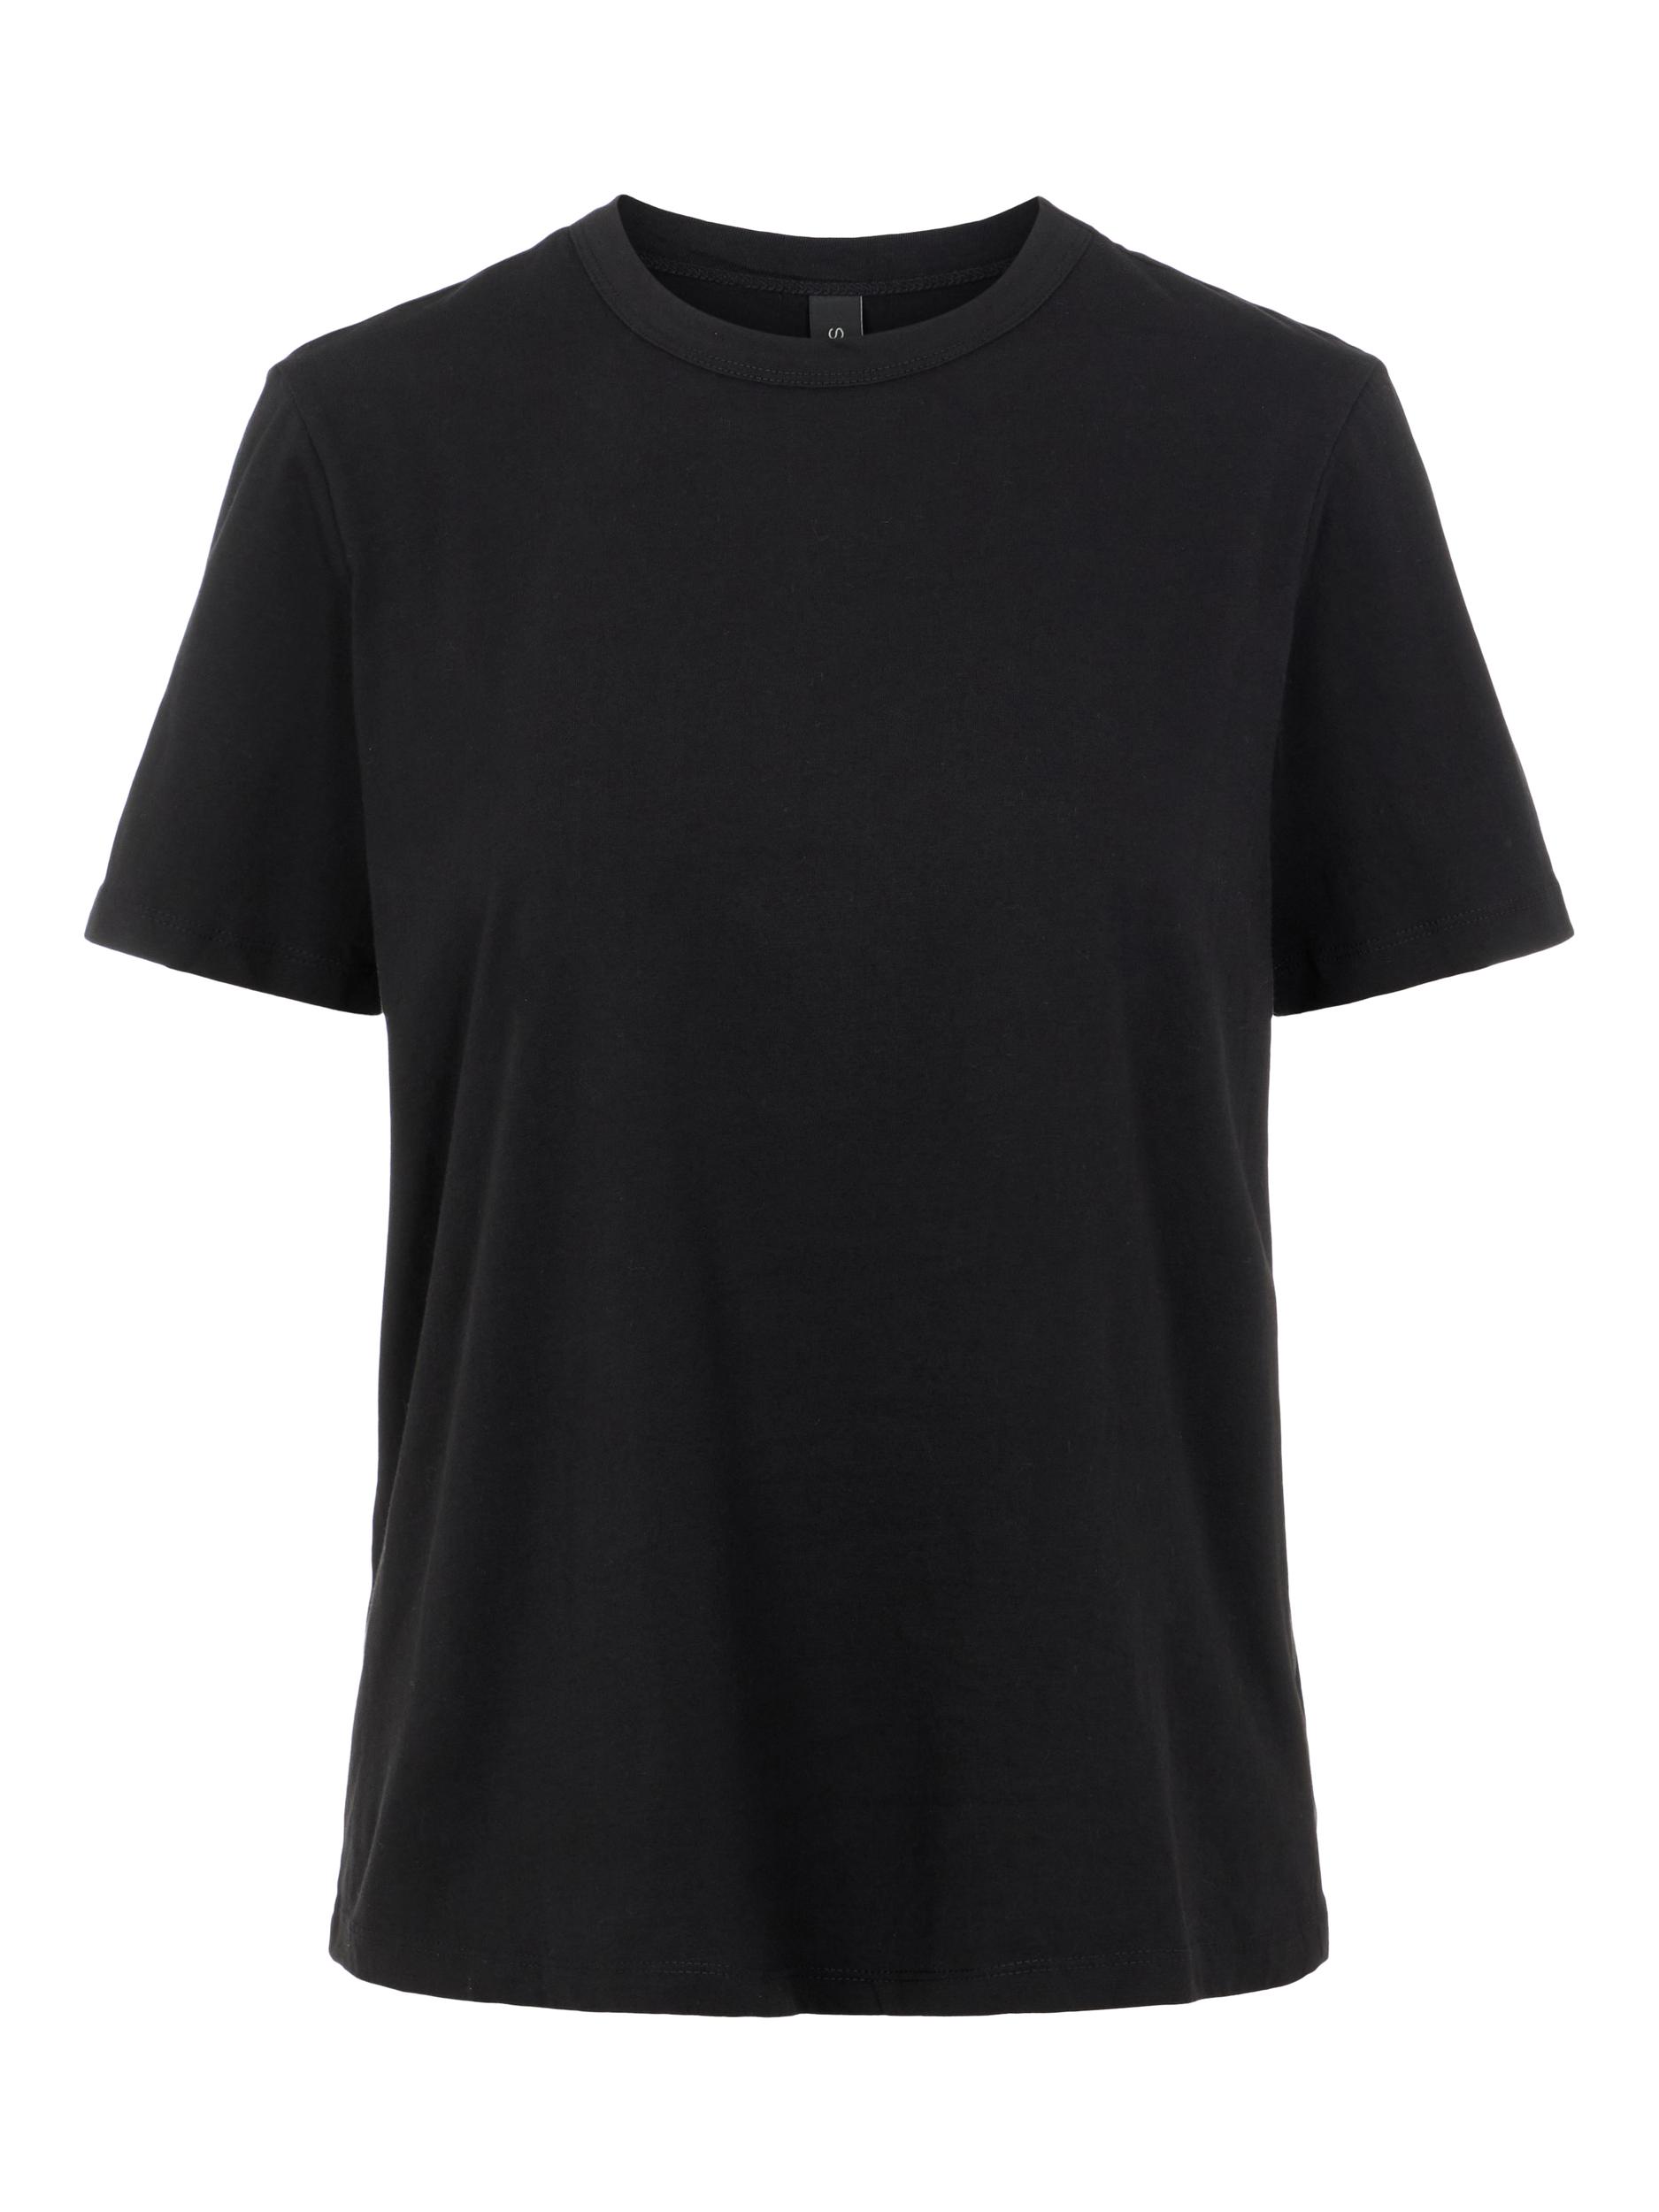 Odzież Koszulki & topy Y.A.S Koszulka Sarita w kolorze Czarnym 